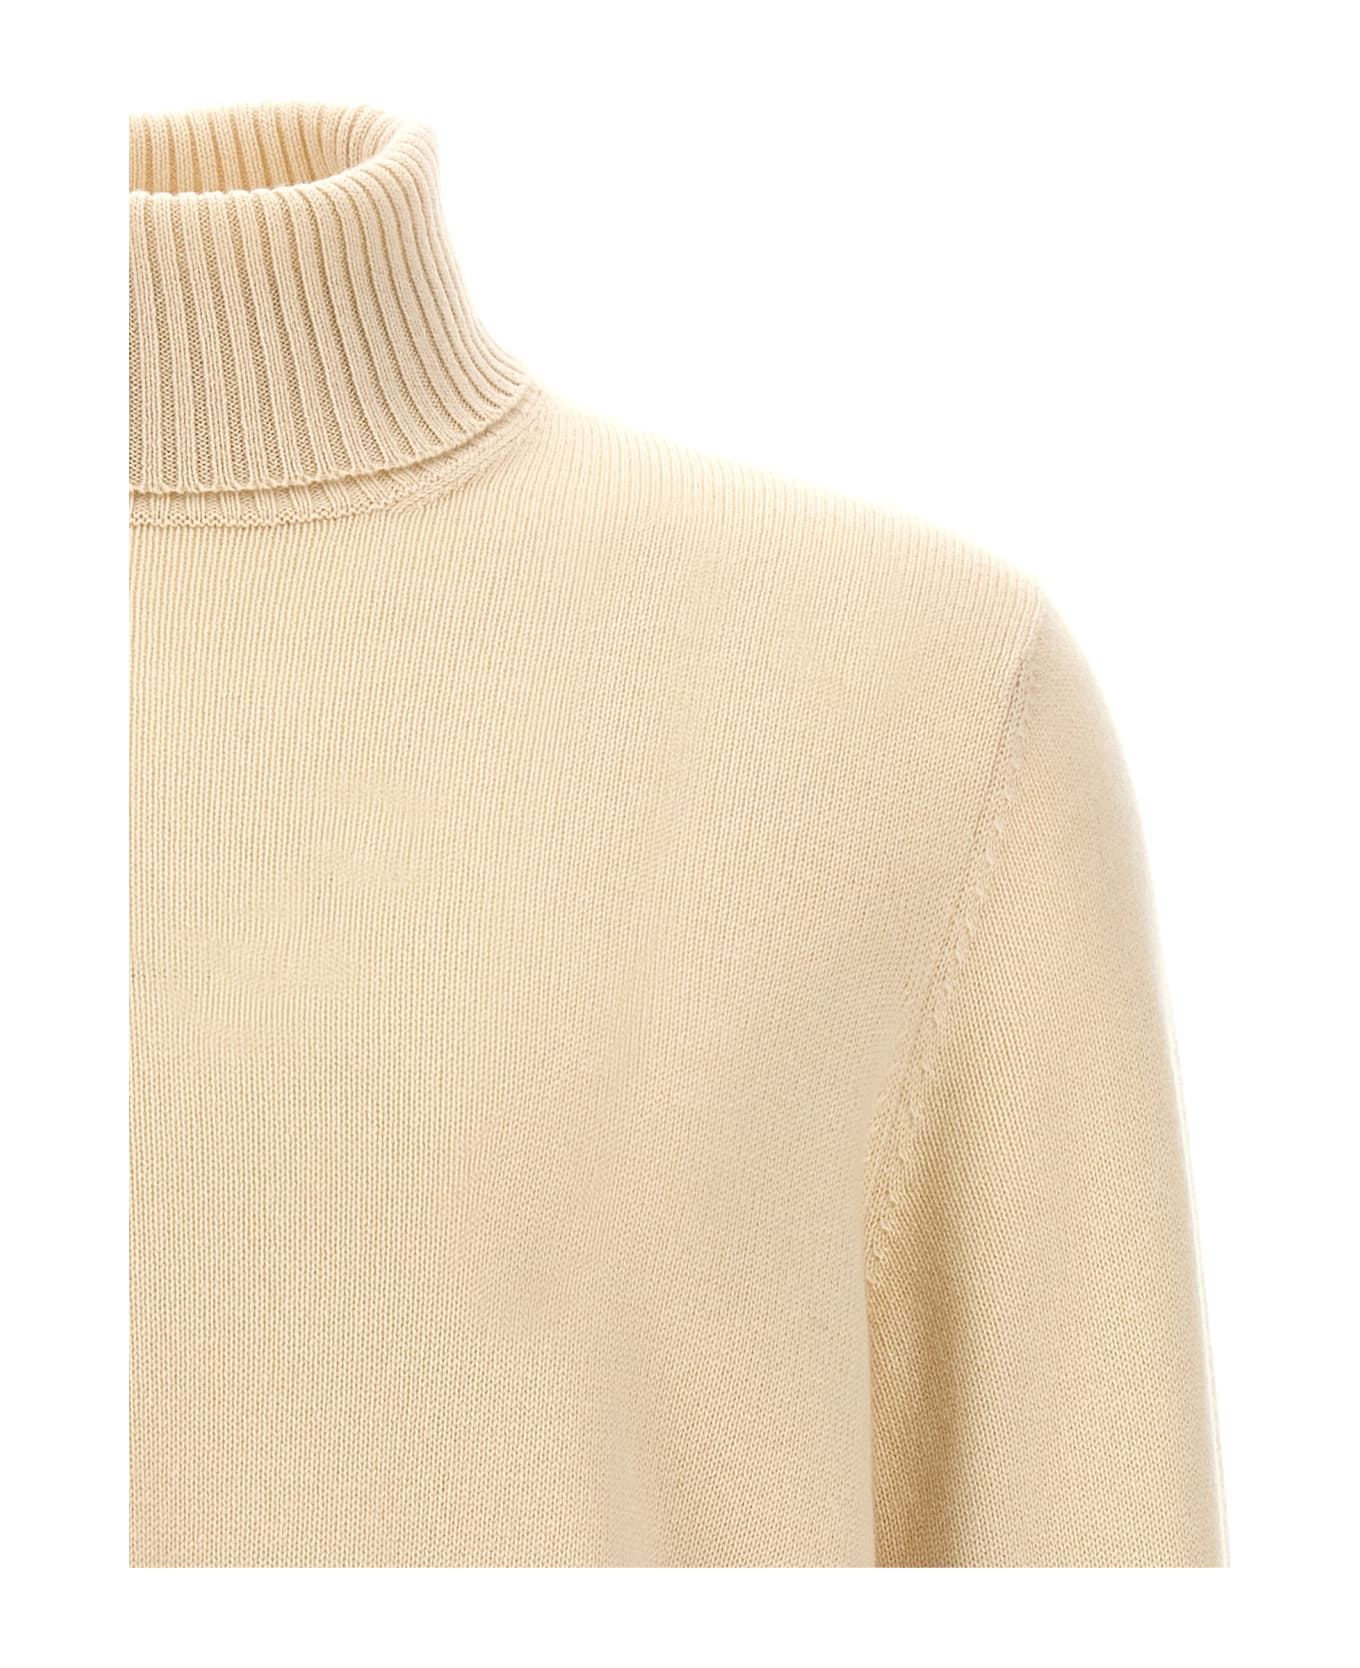 Brunello Cucinelli High Neck Sweater - Beige